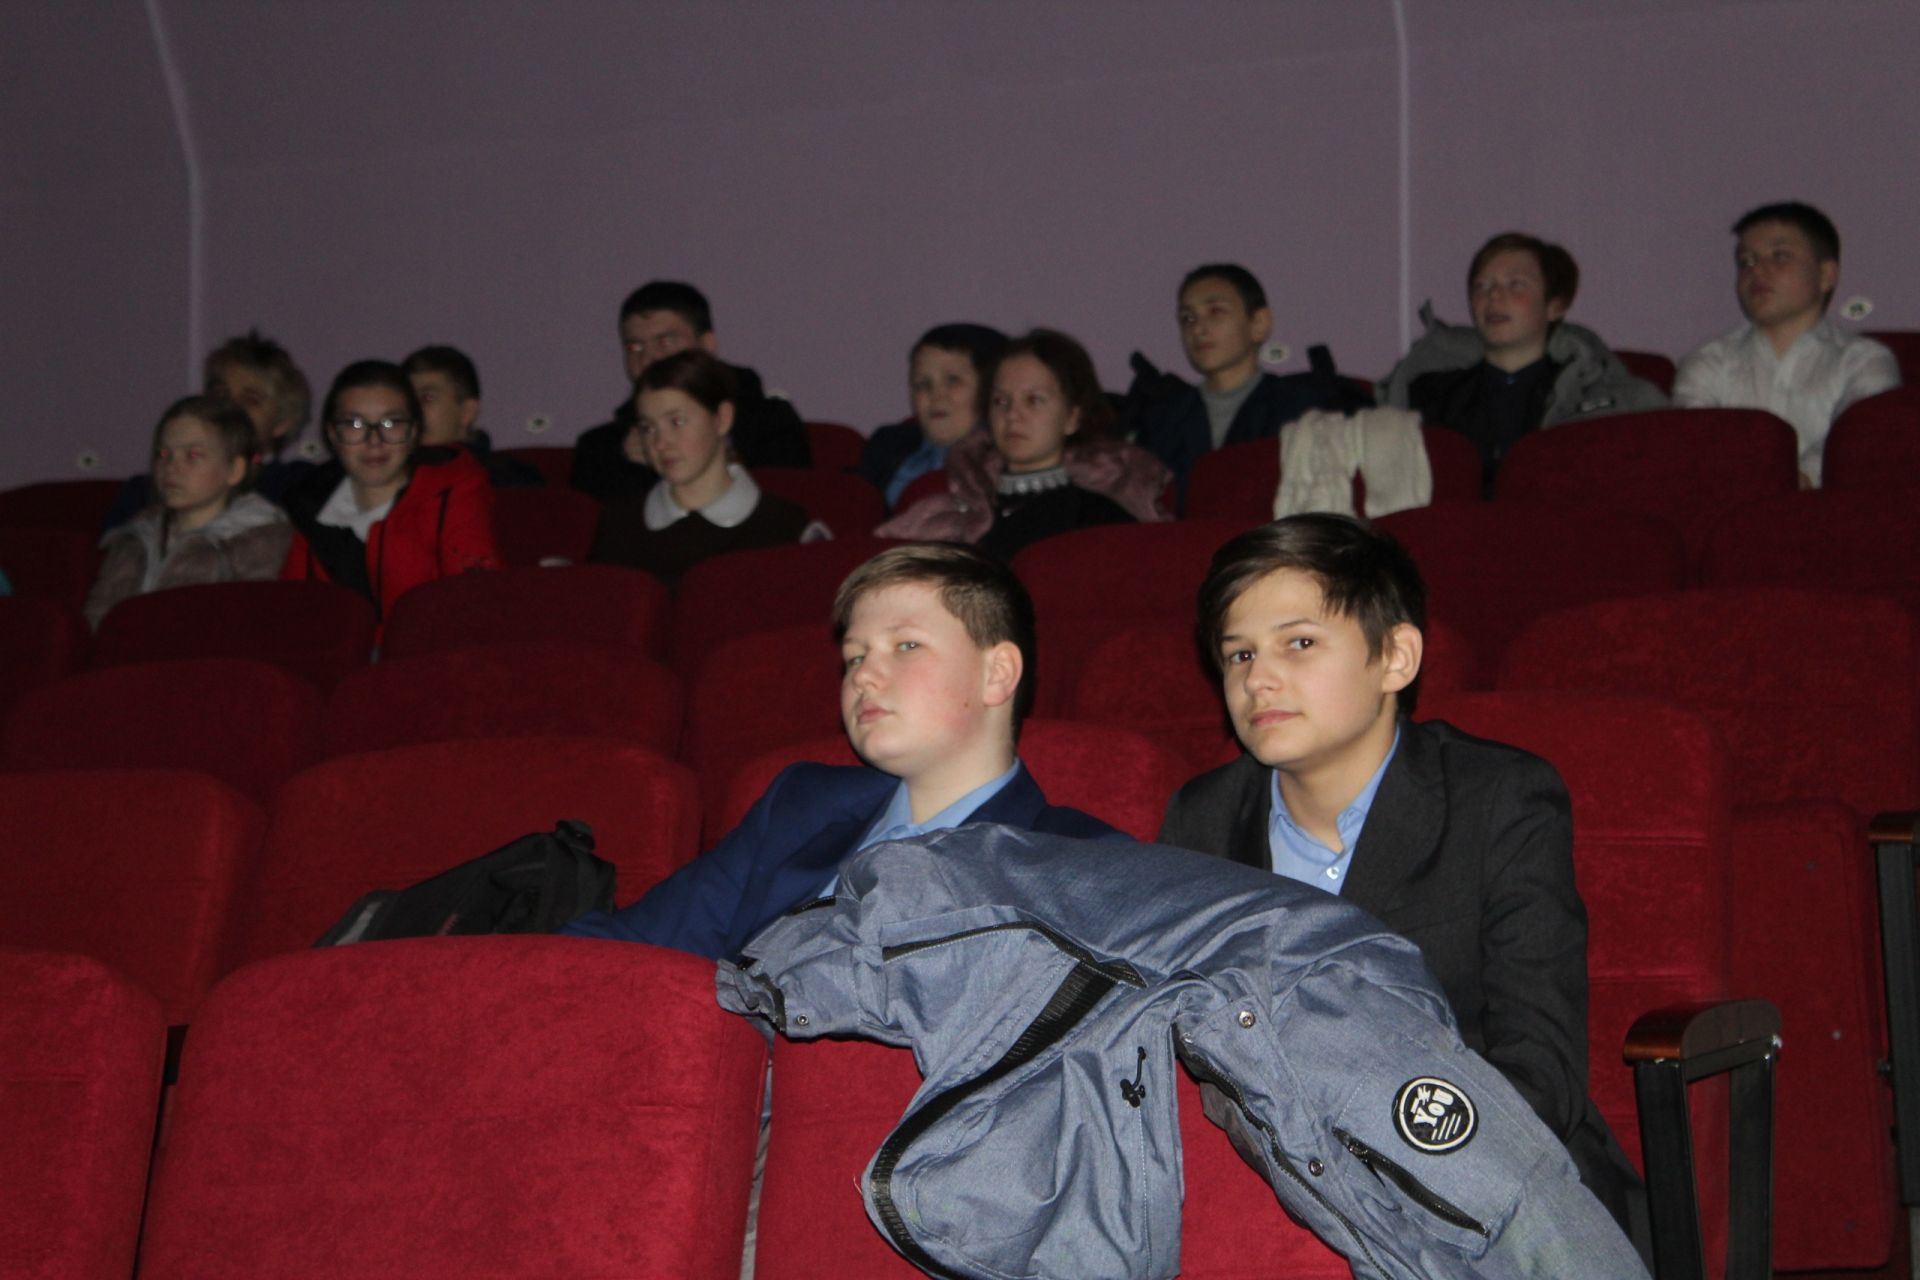 В. Чершинцев: «Необходимо привить патриотическое воспитание через фильмы о войне»